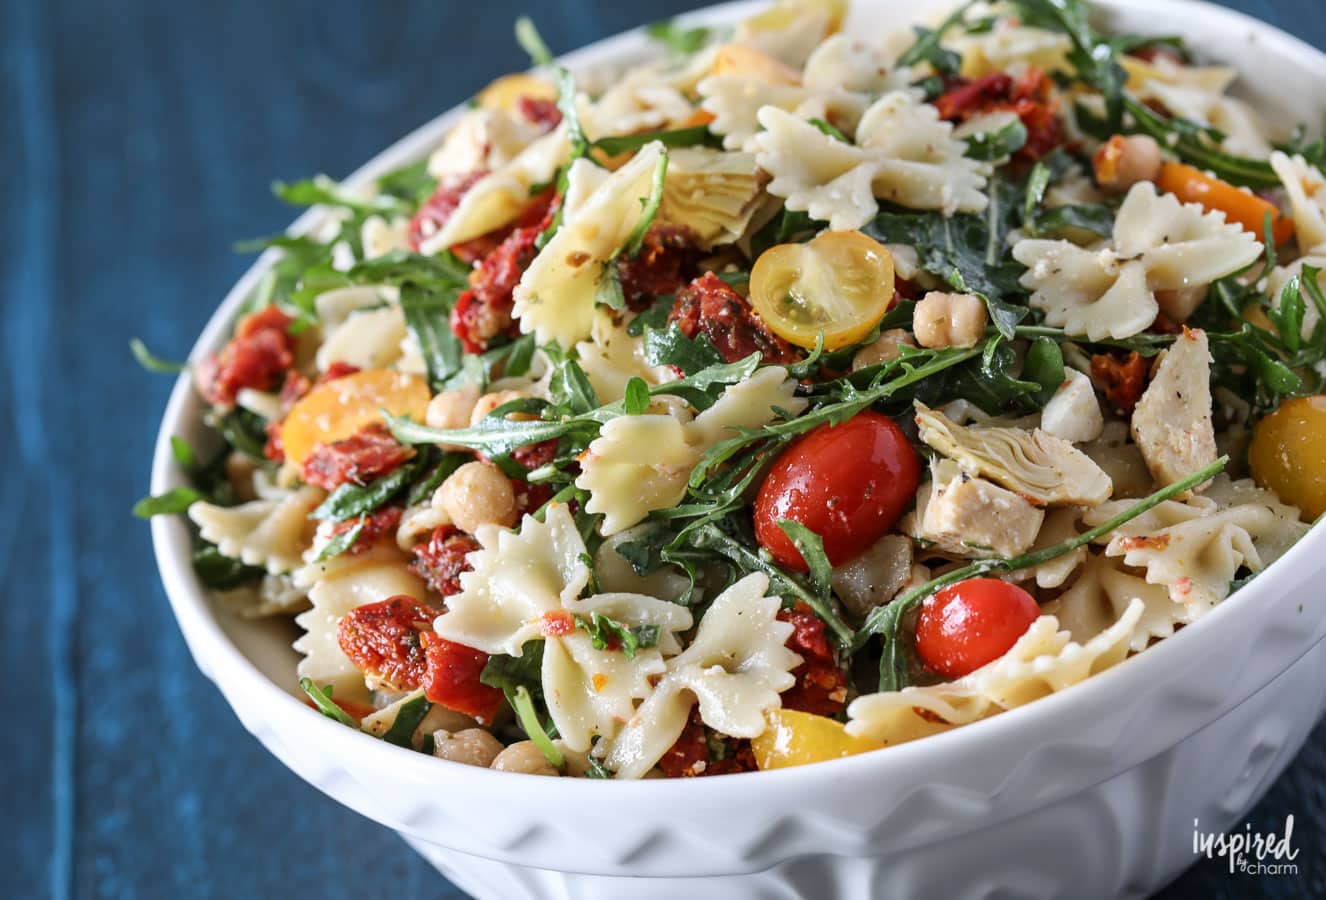 Delicious Sun-Dried Tomato Pasta Salad Recipe #pastasalad #sundried #tomatoes #pasta #recipe #side